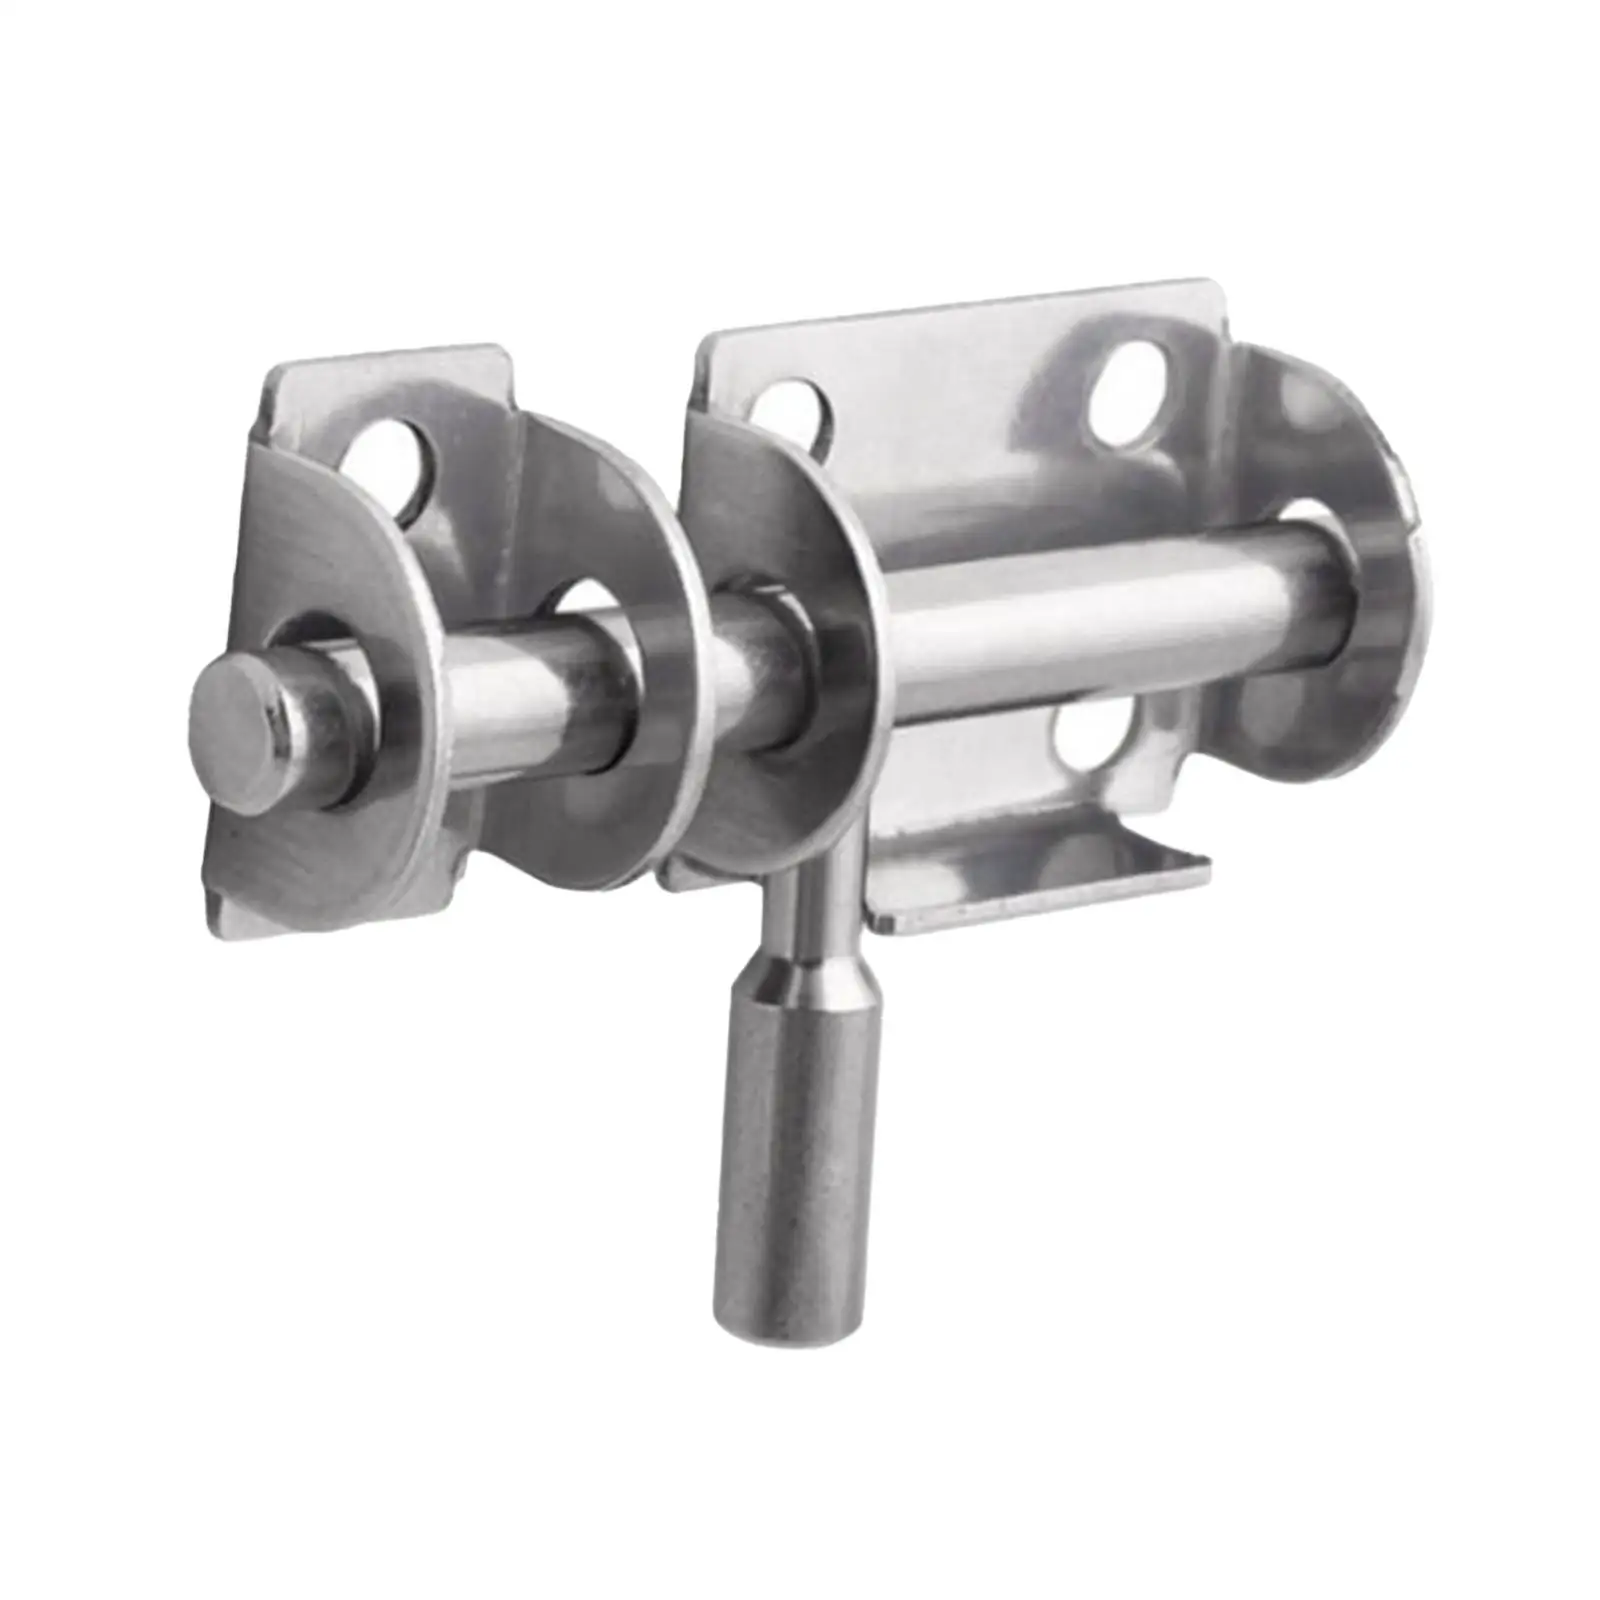 

Stainless Steel Sliding Lock with 6 Screws Gate Shed Latch for Barn Door Bedroom Interior Exterior Door Yard Door Cabinet